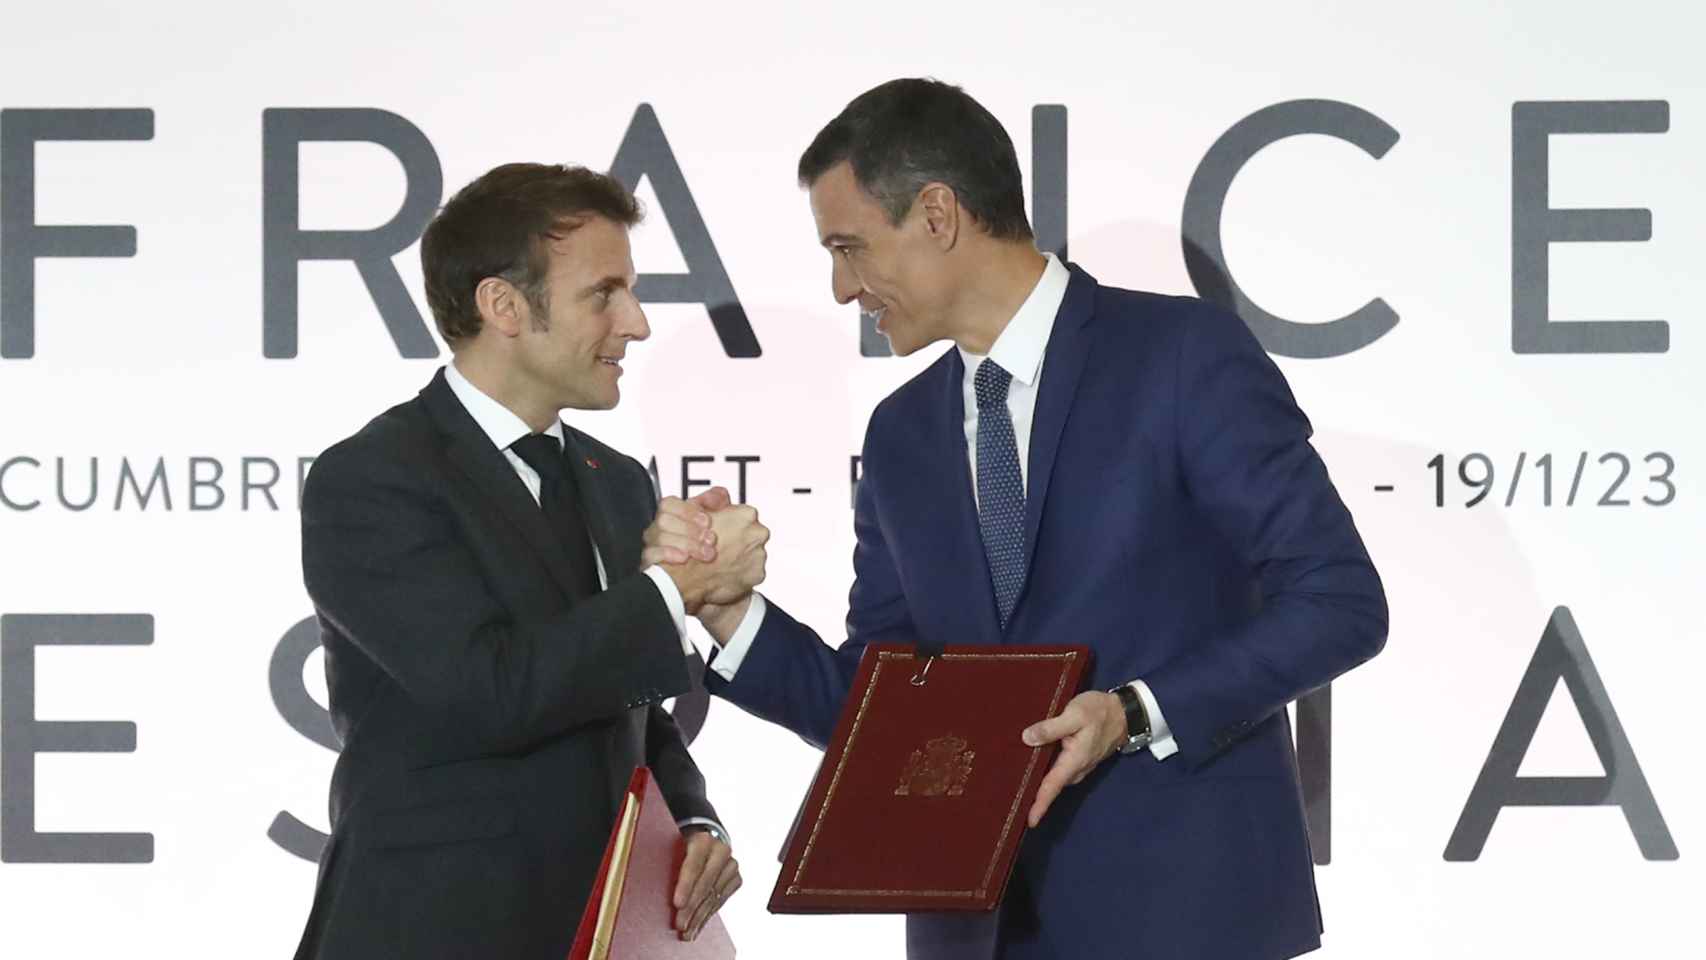 El presidente español, Pedro Sánchez, y su homólogo francés, Emmanuel Macron, en la 27º Cumbre hispanofrancesa celebrada en Barcelona.